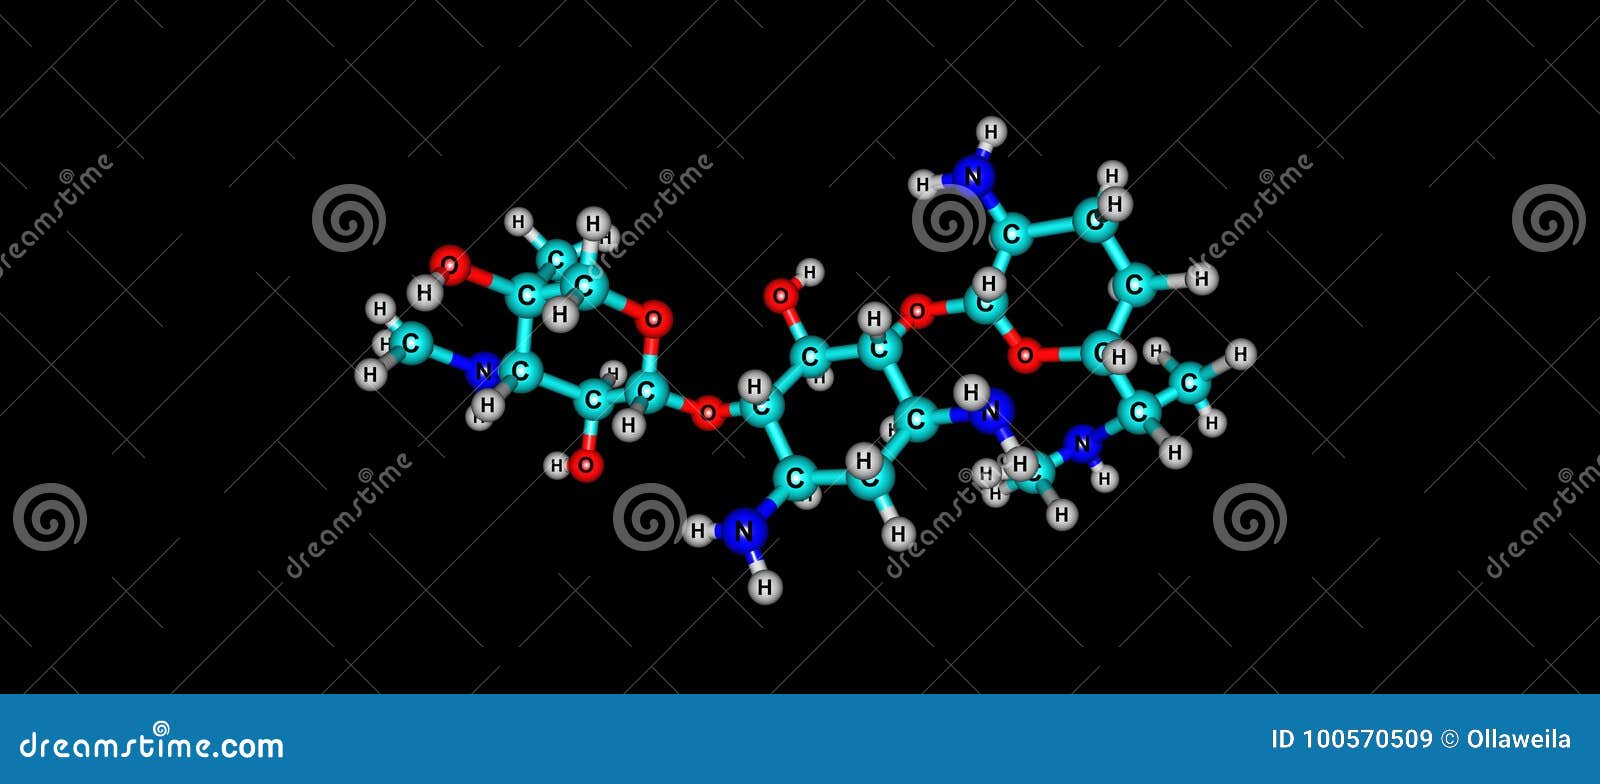 gentamicin molecular structure  on black